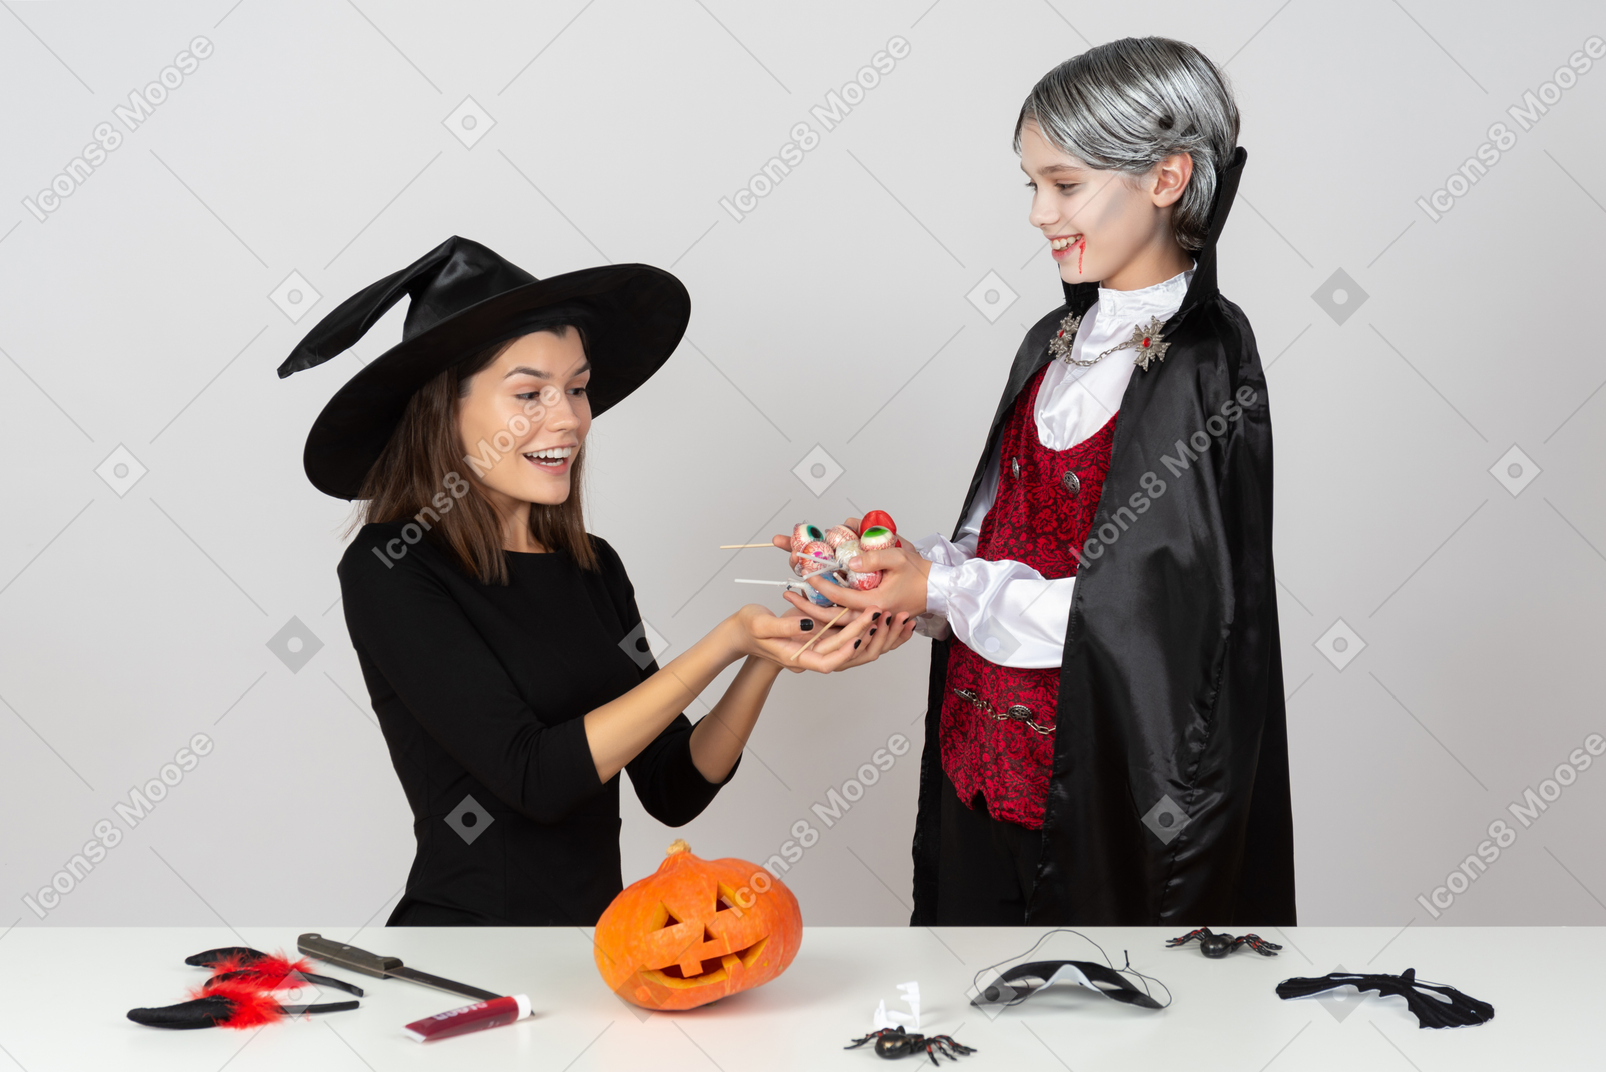 Мальчик в костюме вампира показывает конфеты своей маме в костюме кошки